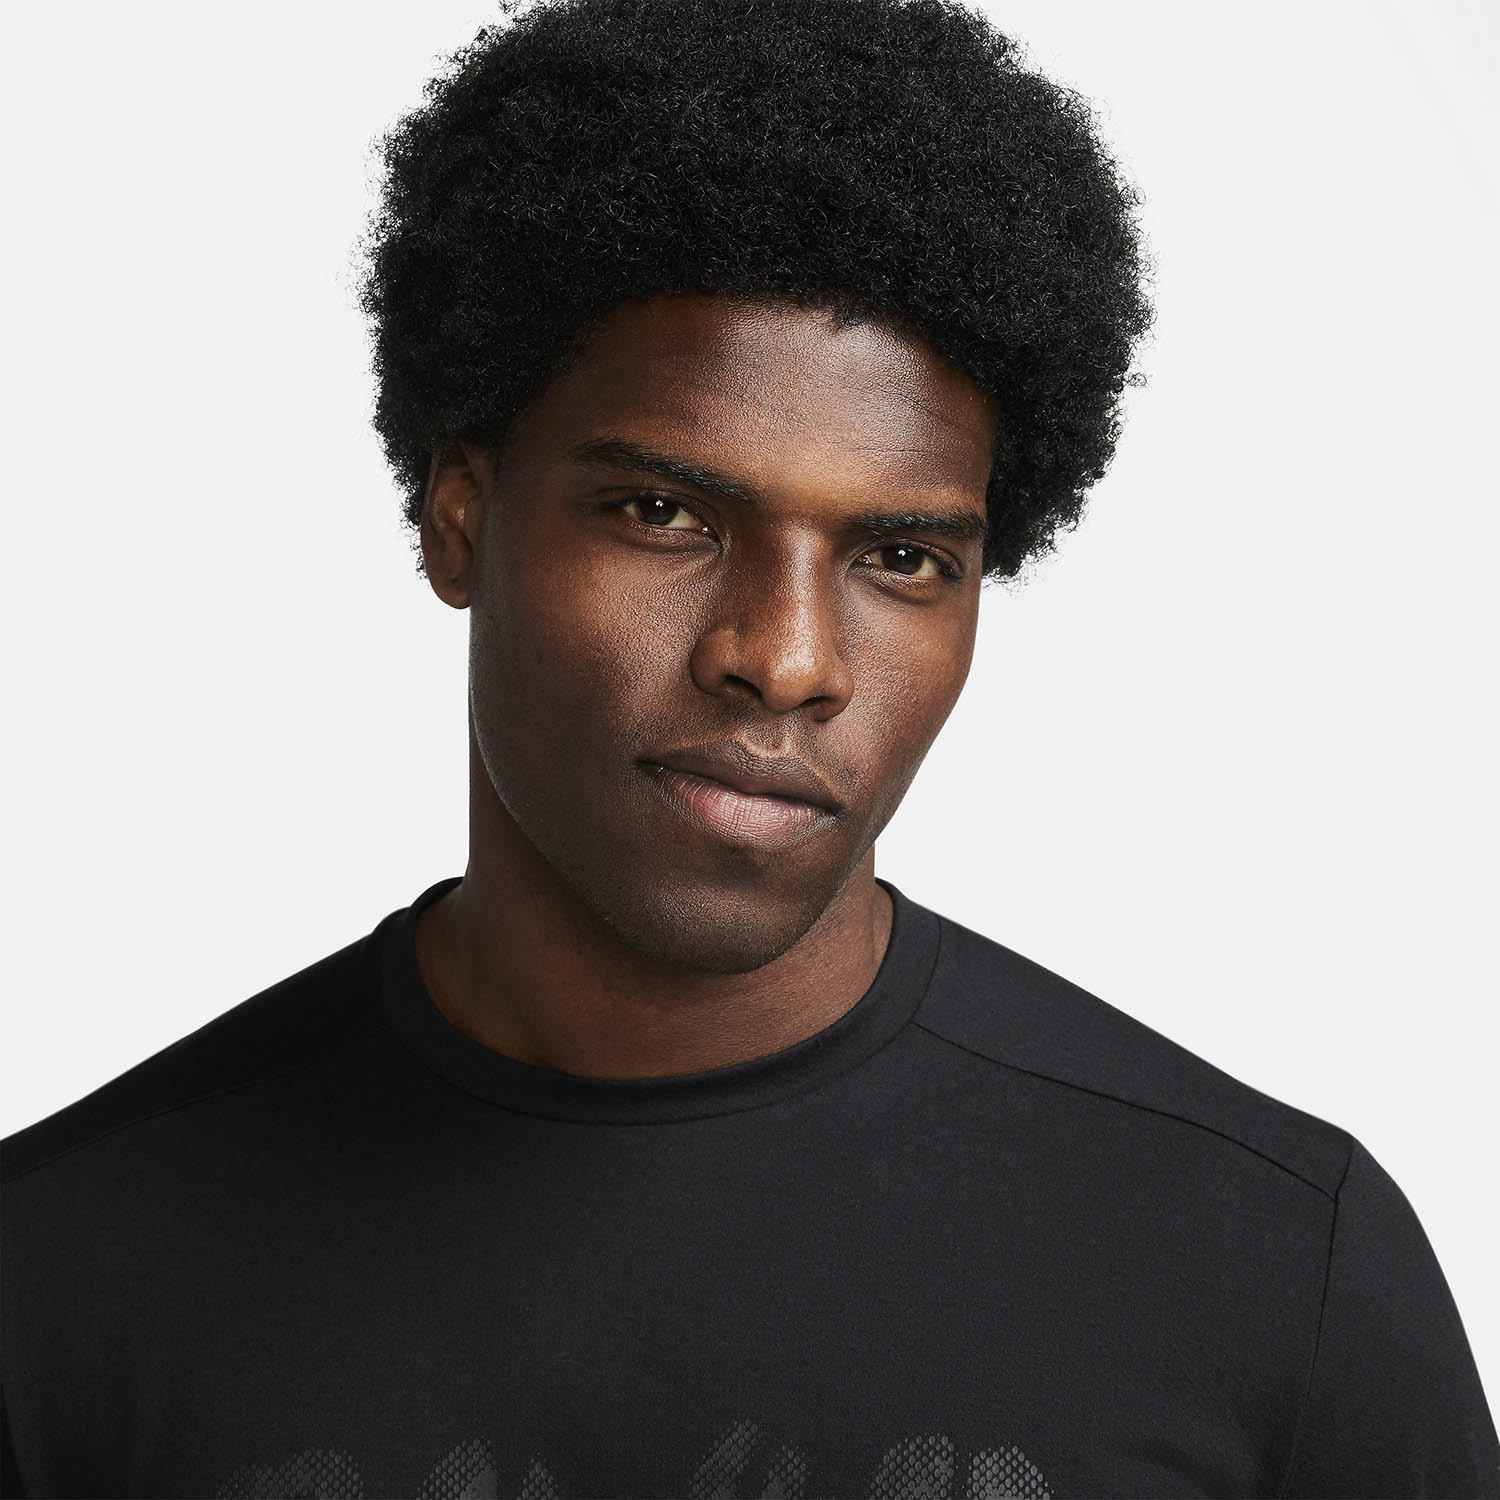 Nike Rise 365 T-Shirt - Black/Reflective Black